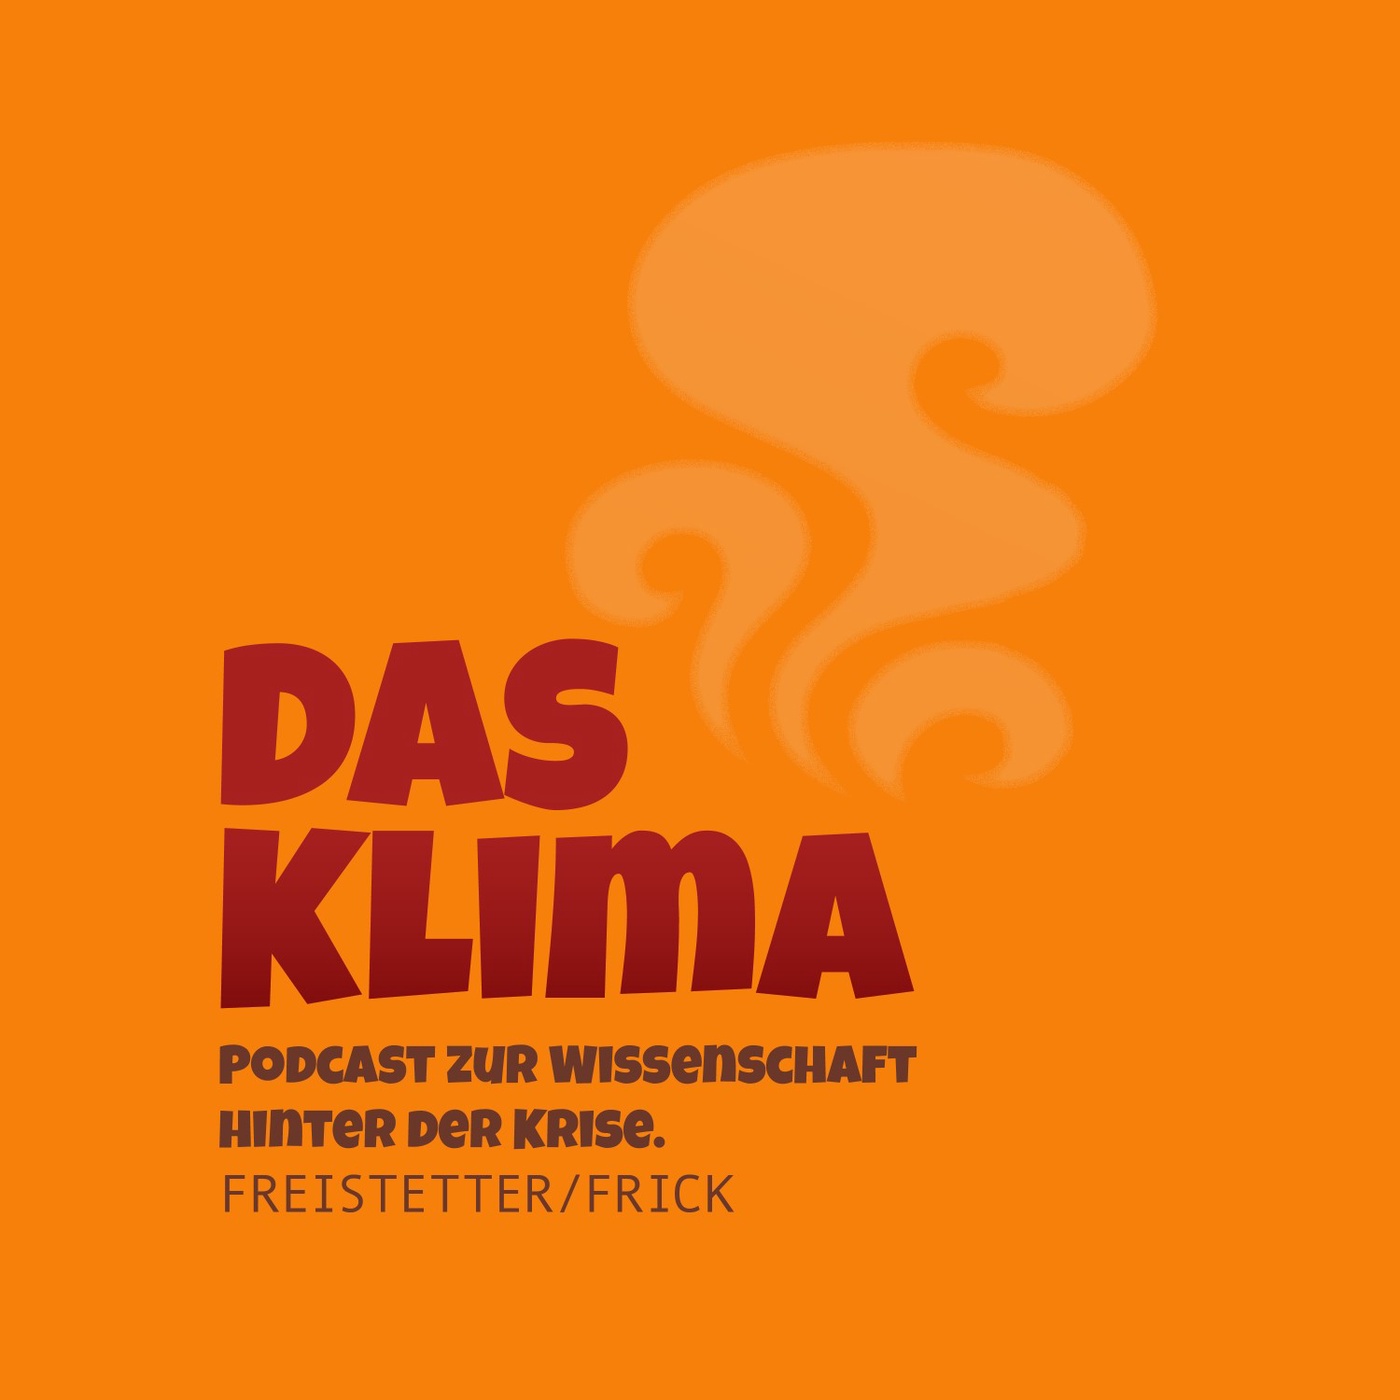 DK116 - Dumme Politik als Folge der Klimakrise